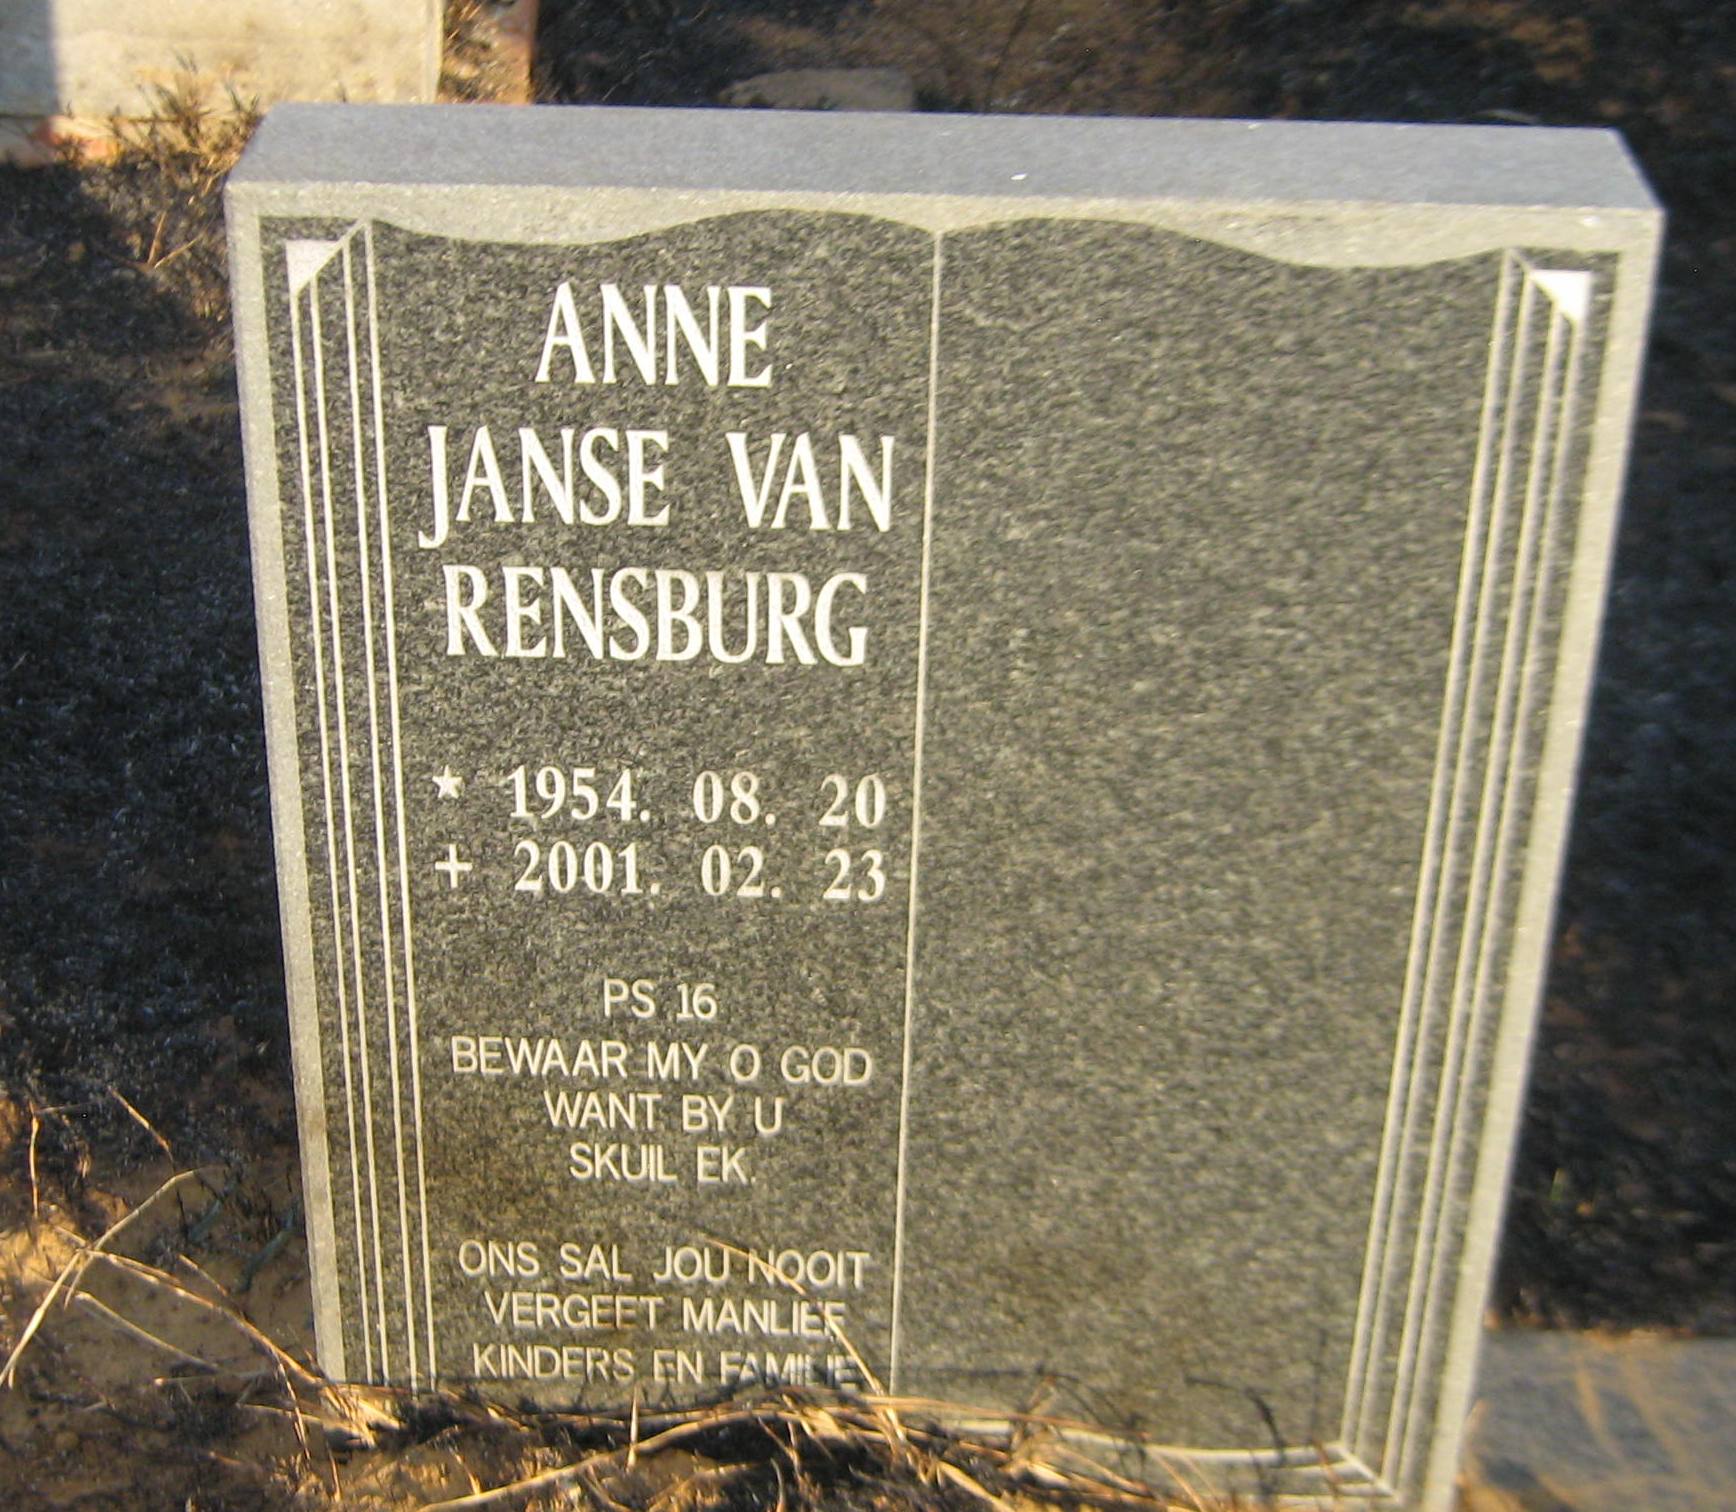 RENSBURG Anne, Janse van 1954-2001